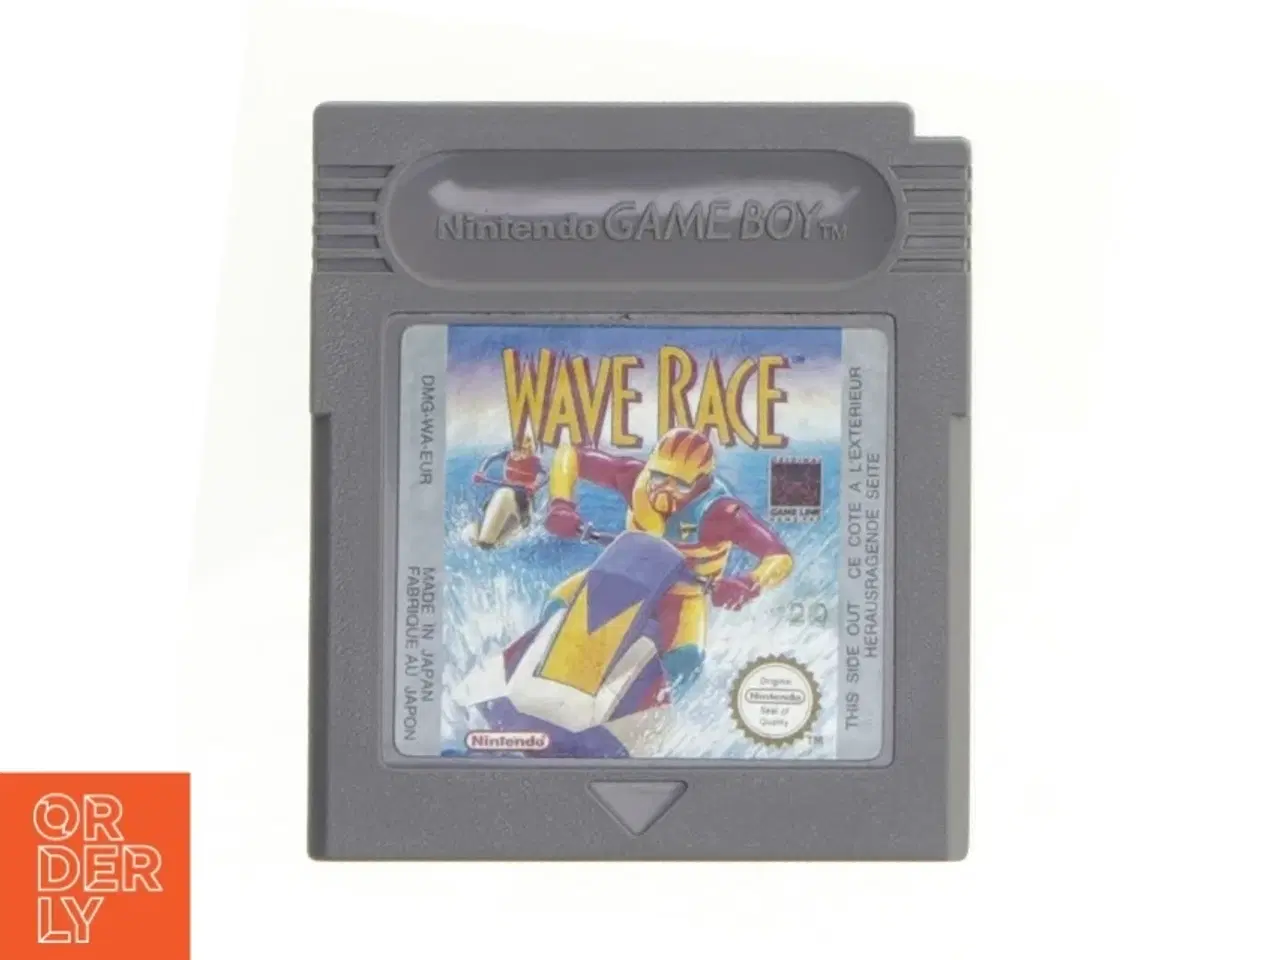 Billede 1 - Wave Race spil til Nintendo Game Boy fra Nintendo (str. 6 cm)